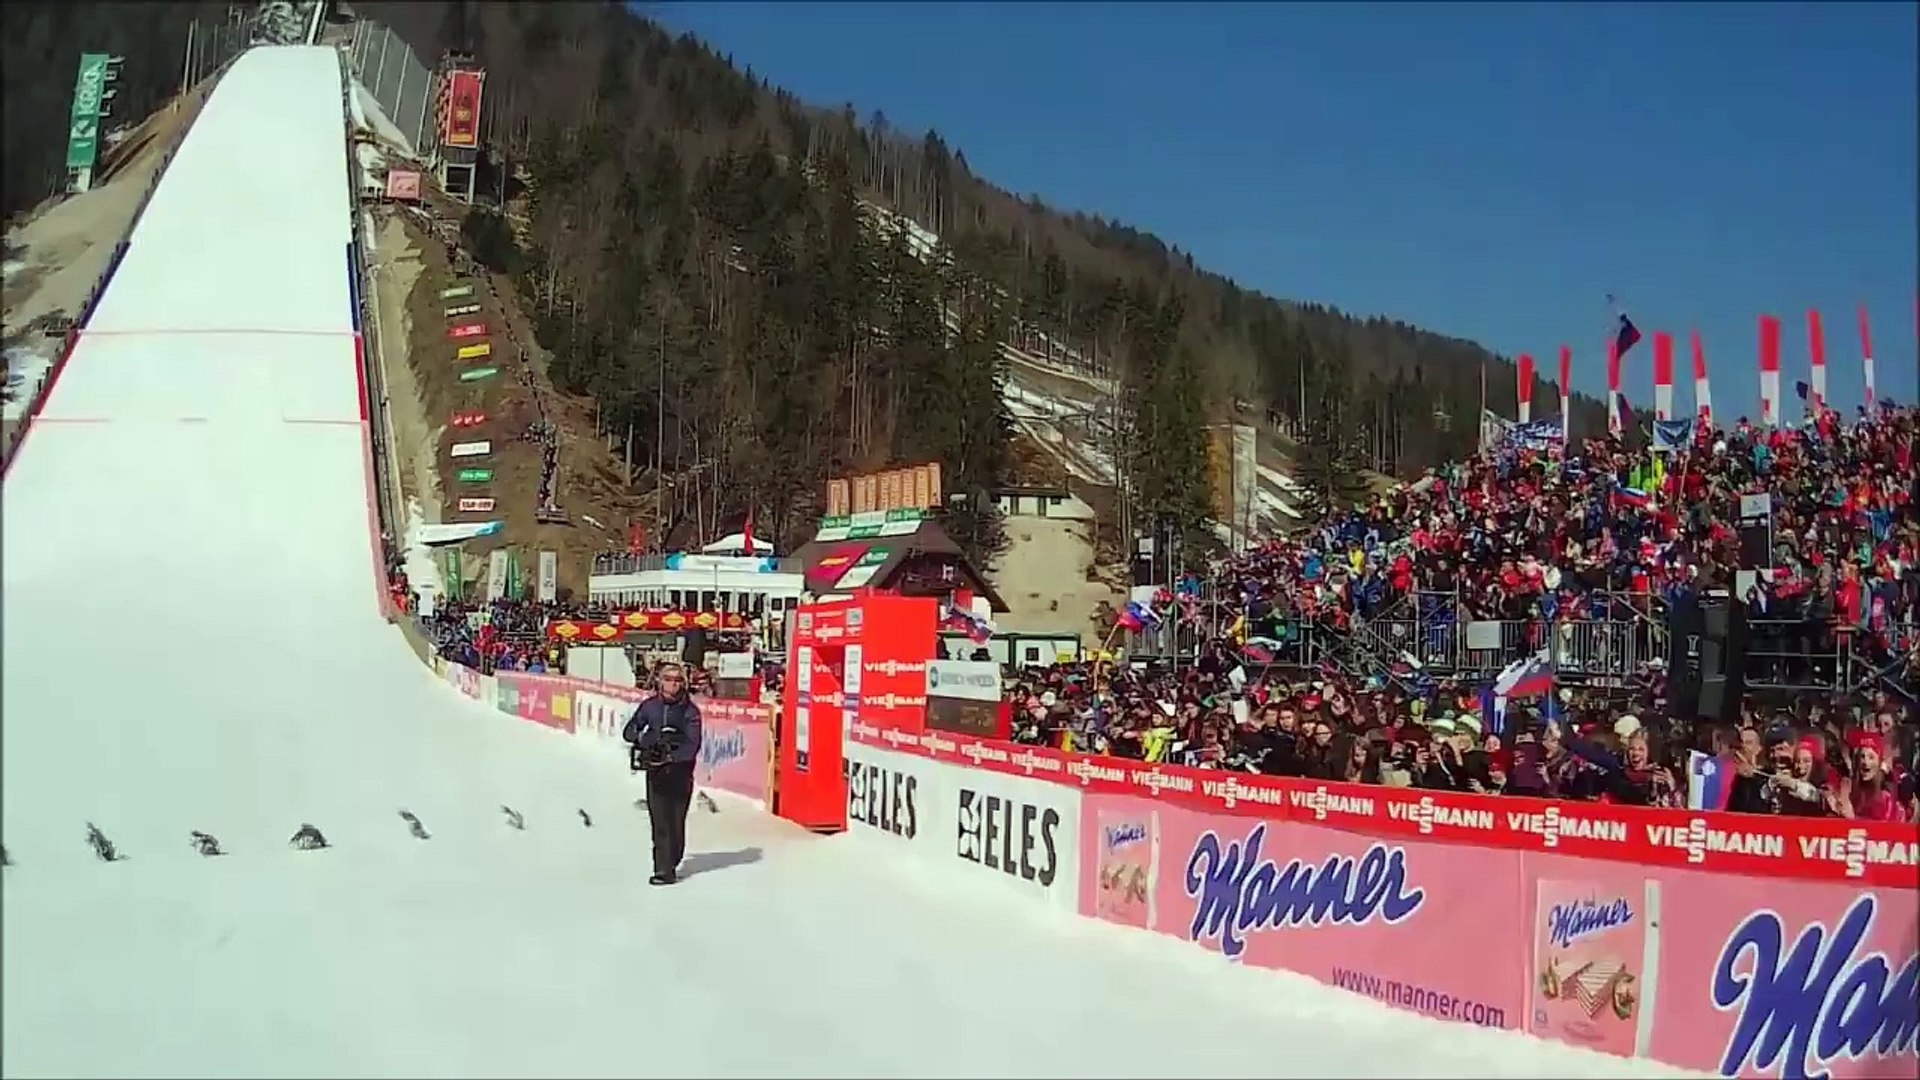 Le saut à ski de Jurij Tepes en caméra embarquée - Vidéo Dailymotion